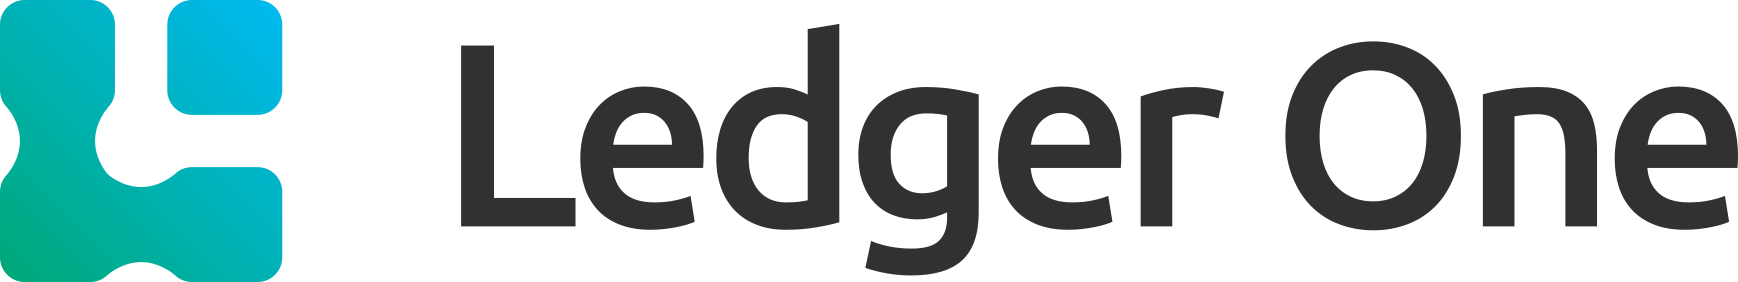 Ledger One logo